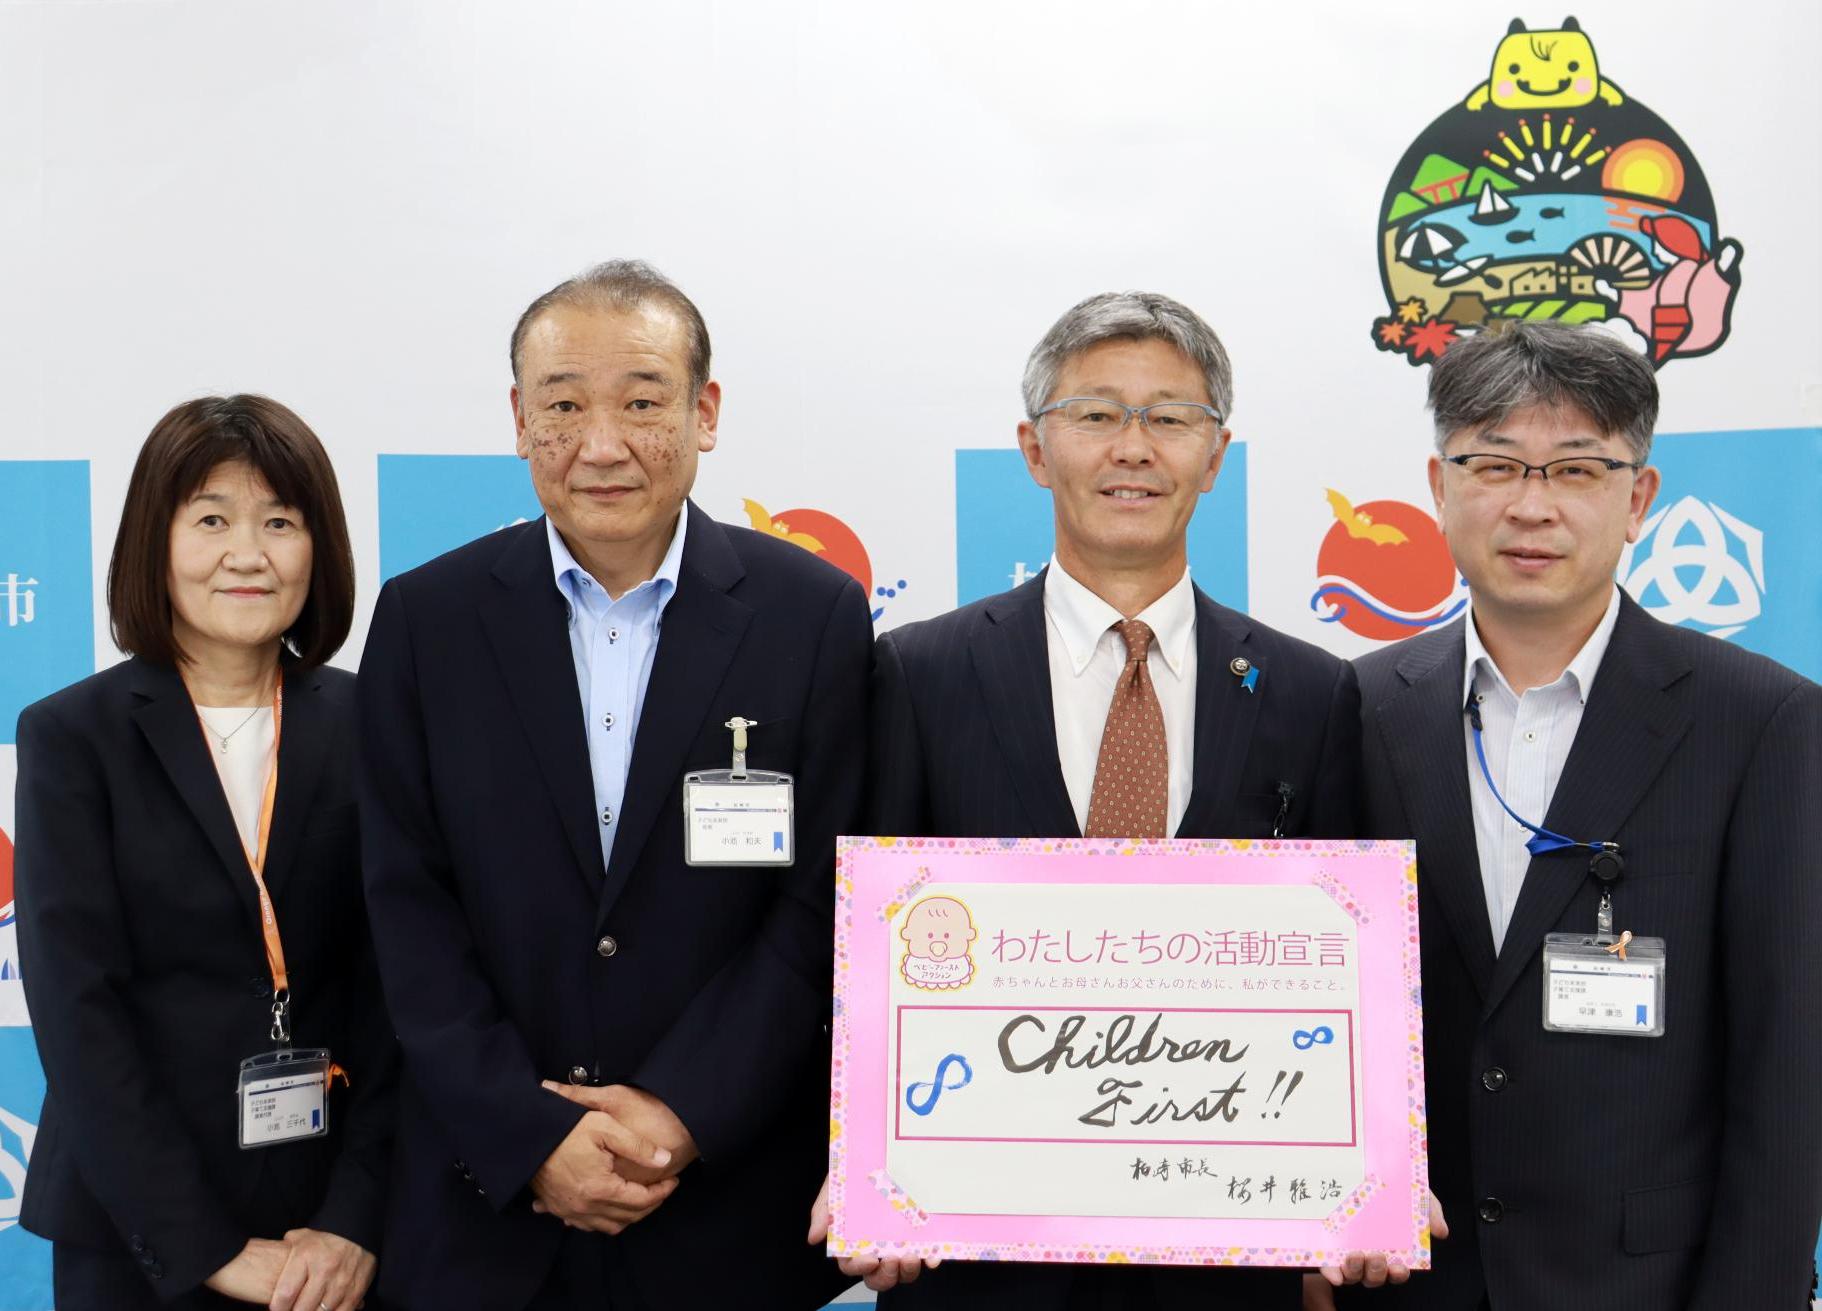 「私たちの活動宣言チルドレンファースト」の書類を持つ櫻井市長と職員3名